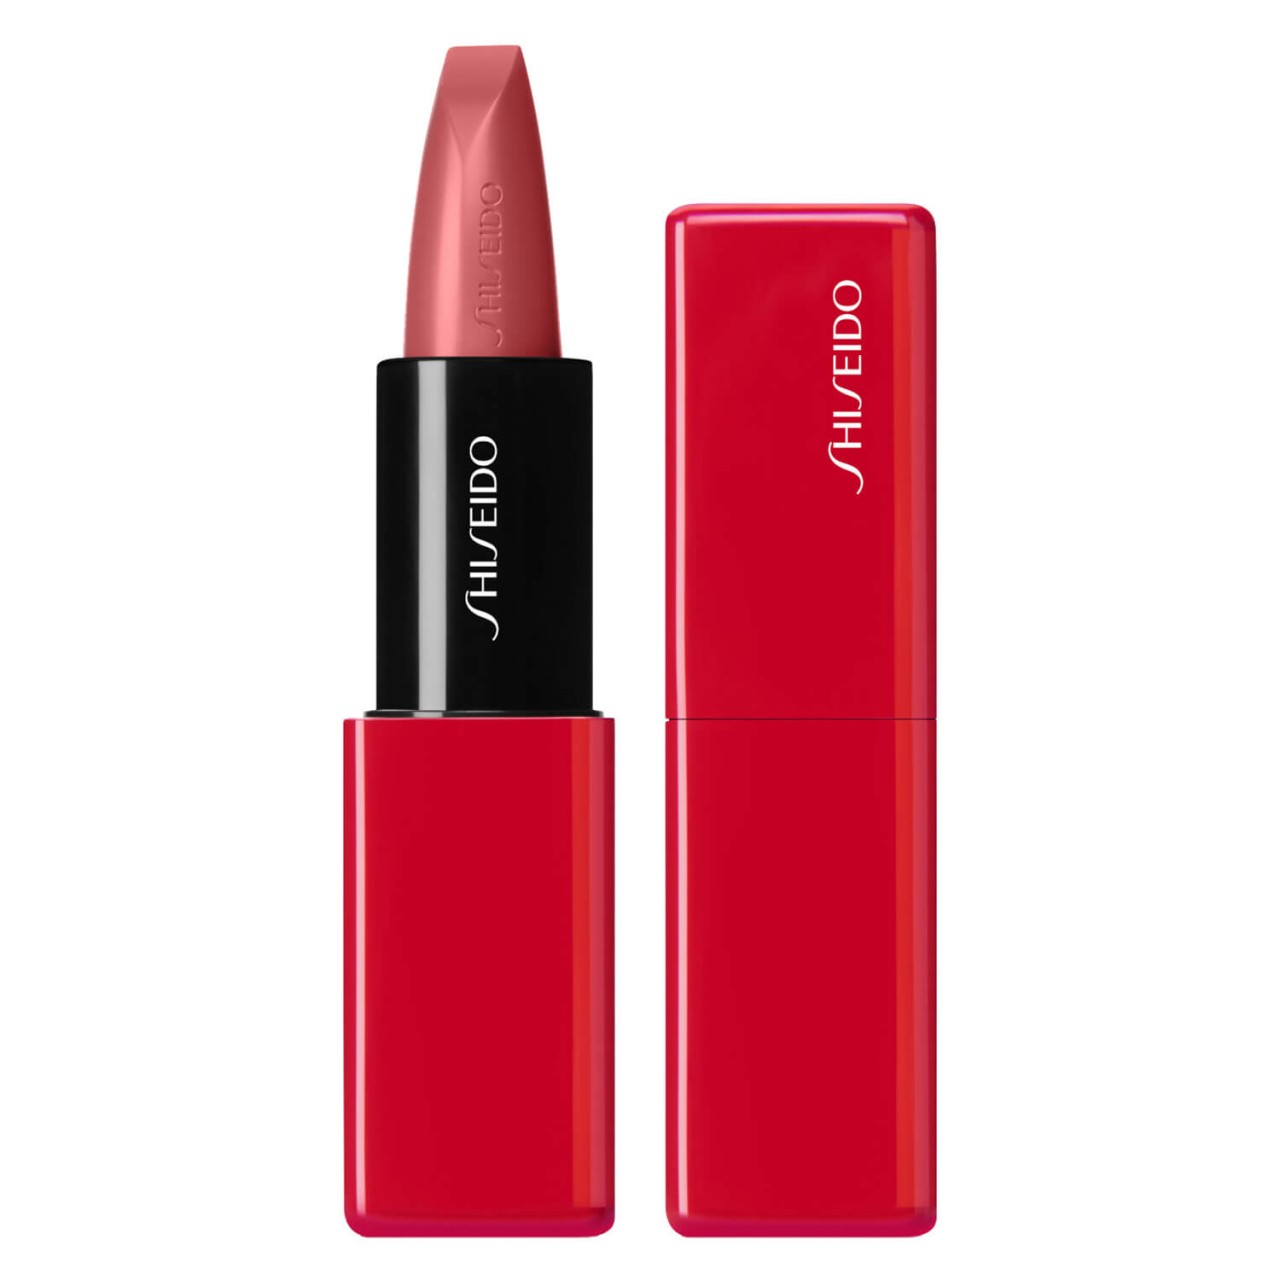 TechnoSatin Gel Lipstick - Voltage Rose 408 von Shiseido